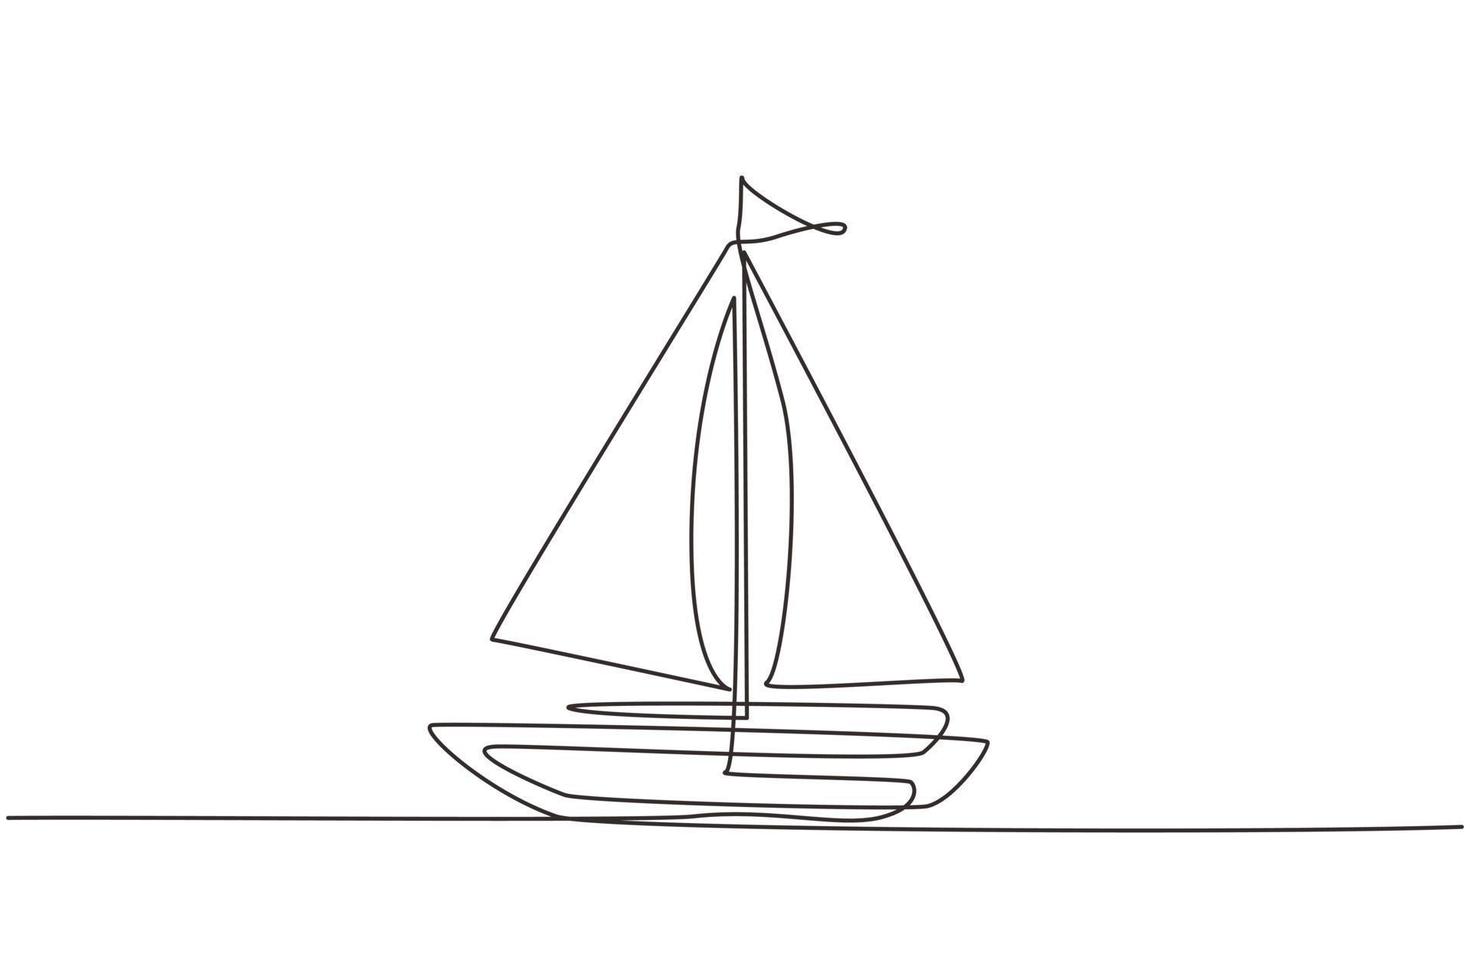 une seule ligne dessinant un petit voilier, bateau, voilier, style plat. icône ou symbole de bateau jouet, voilier, voilier à voiles blanches. illustration vectorielle graphique de conception de dessin en ligne continue vecteur